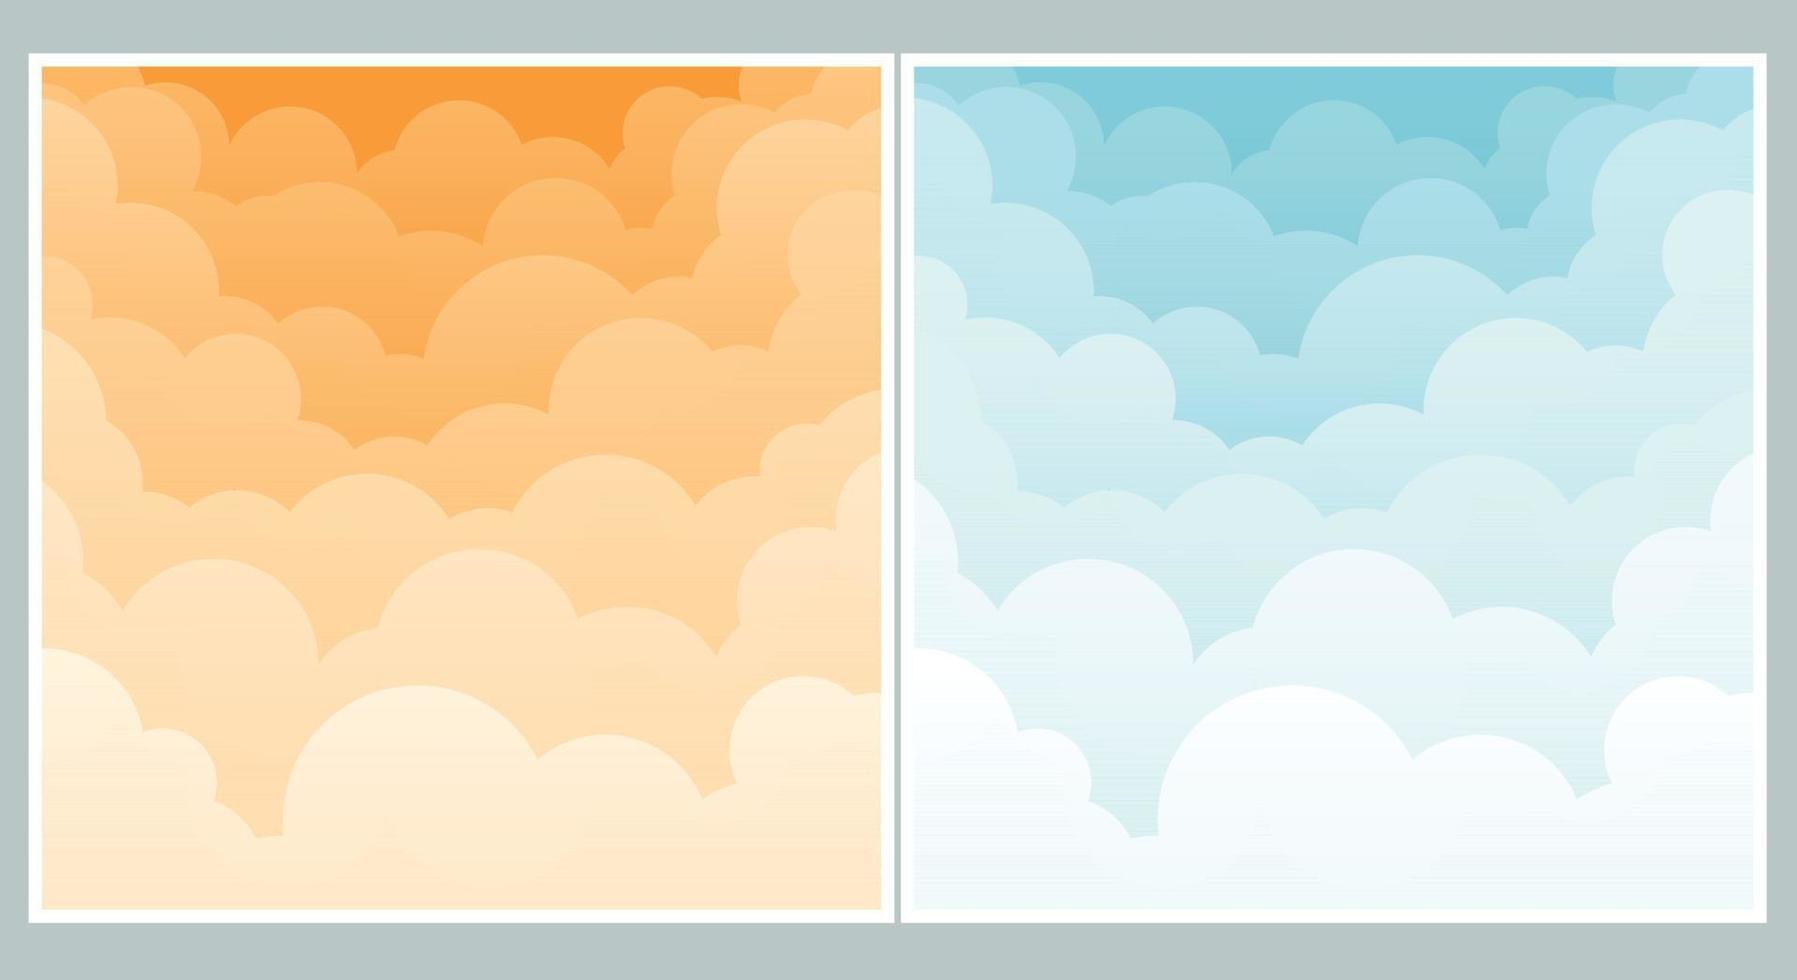 Himmel und Wolkenhintergrund. stilvolles design mit flachem plakat, flyer, postkarten, webbannern. isoliertes Objekt. Vektor-Illustration. vektor